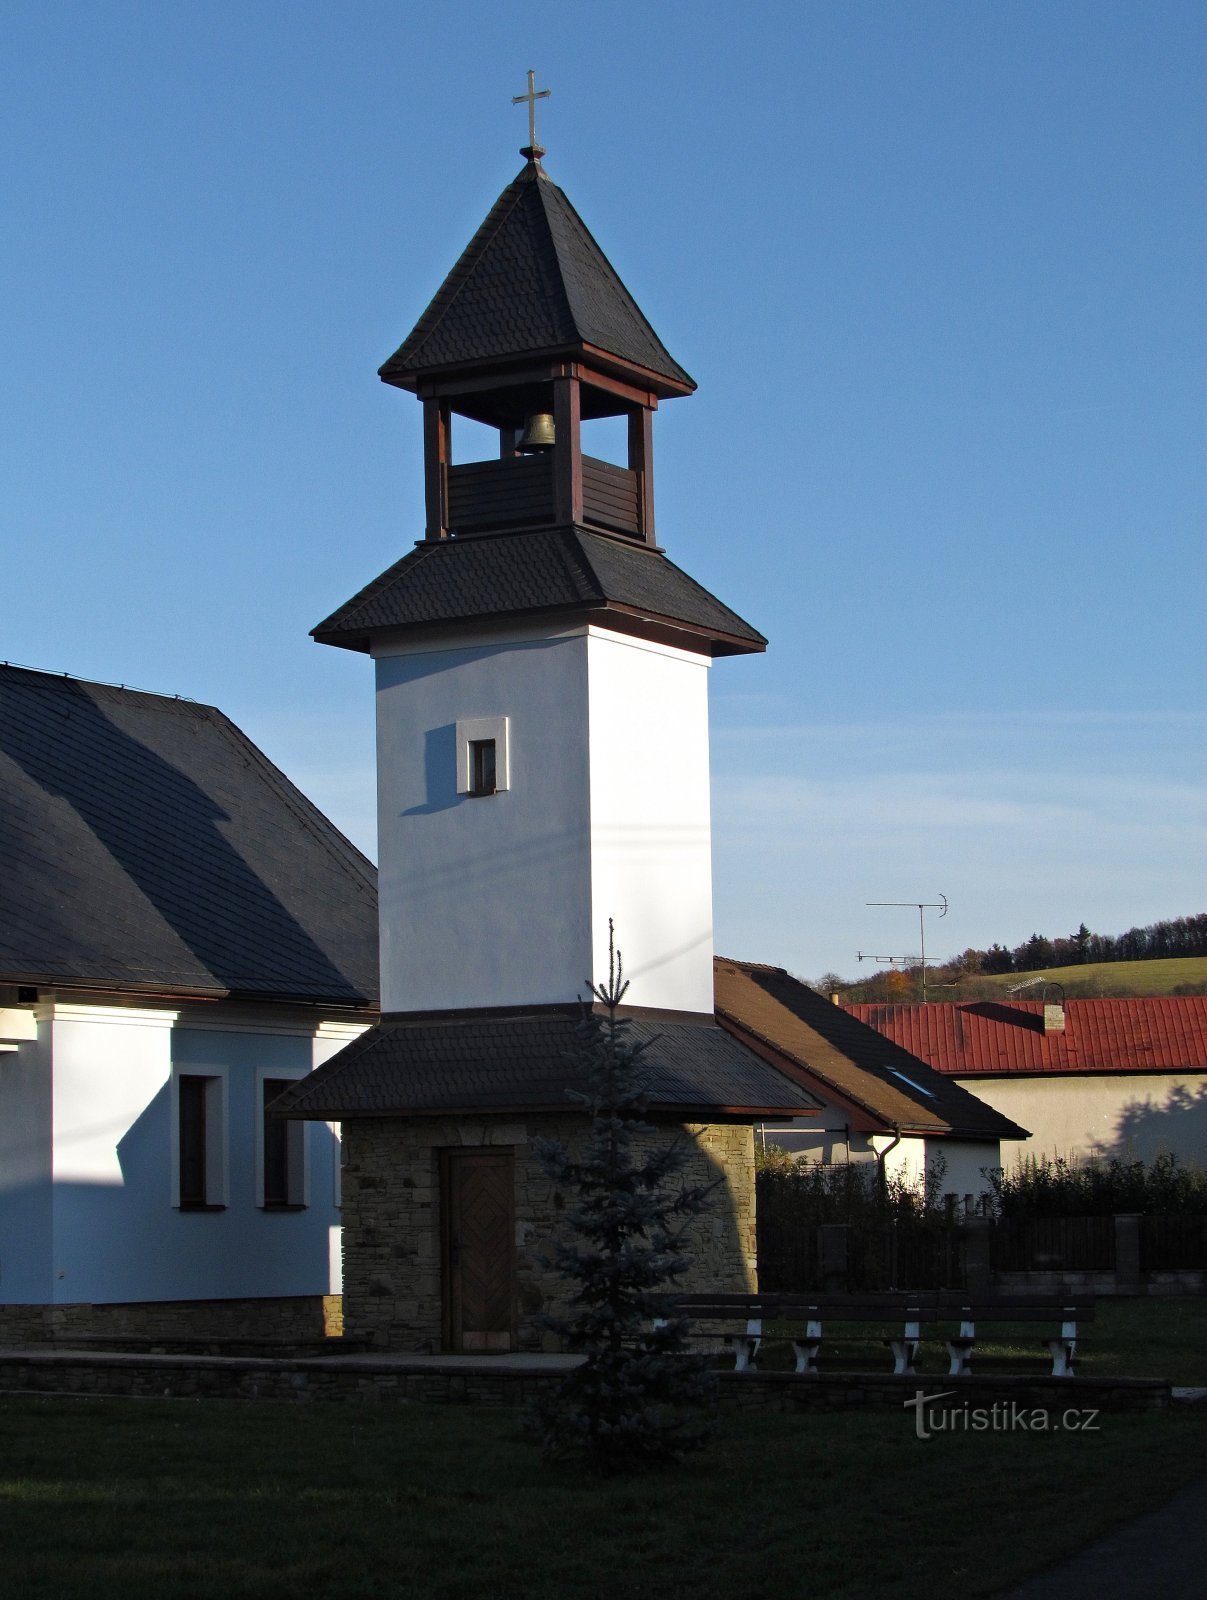 Doubravy - capela Sf. Vojtěch